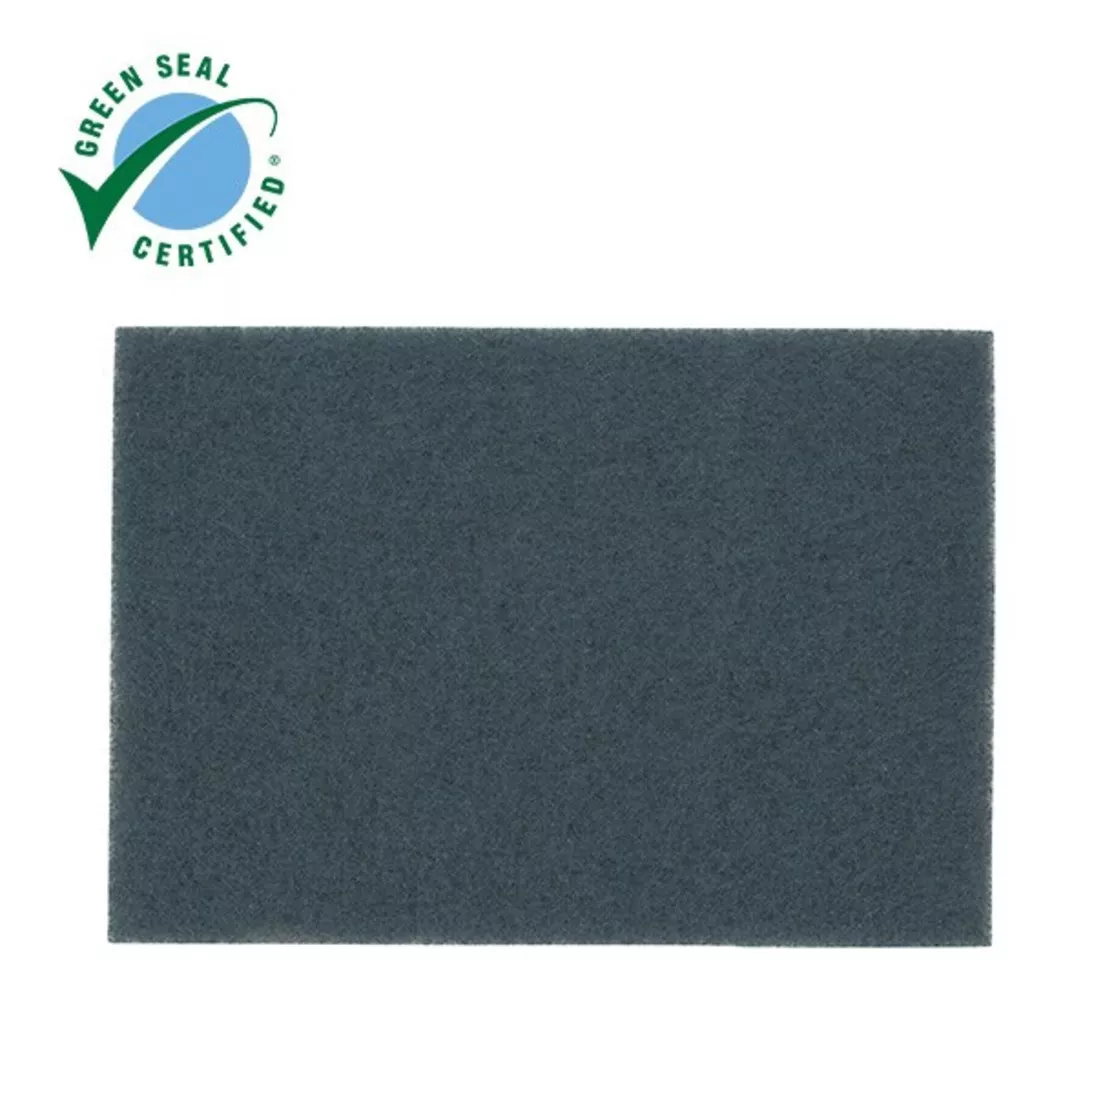 Scotch-Brite™ Blue Cleaner Pad 5300, Blue, 508 mm x 356 mm, 20 in x 14
in, 10 ea/Case